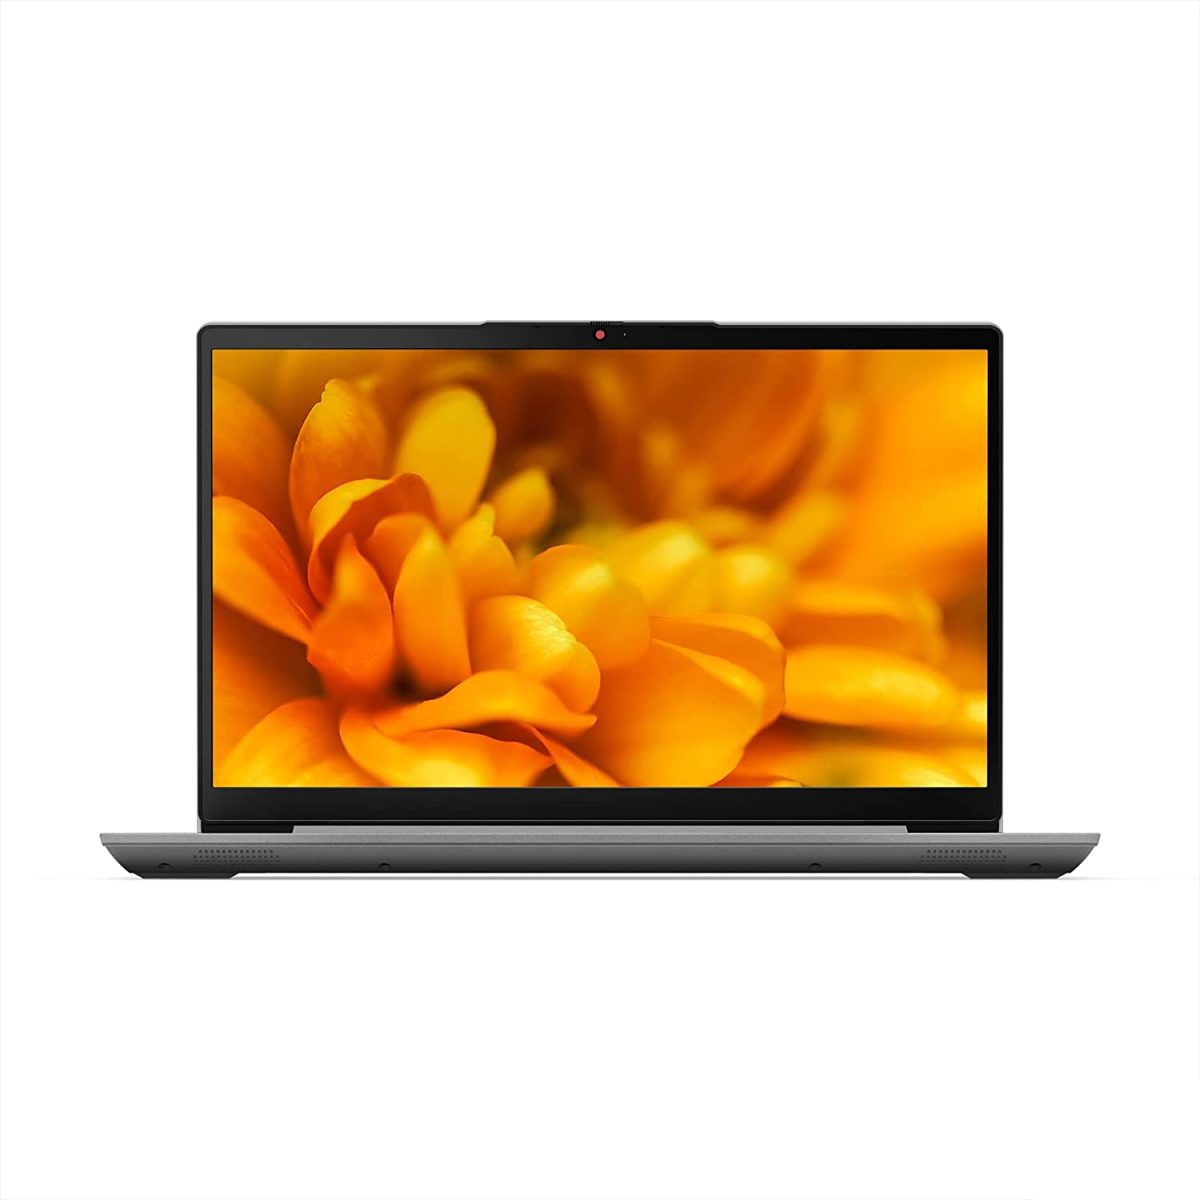 IdeaPad slim 3 | 4 GB RAM | 256 GB SSD | 3 years warranty| 15 Inch laptop in Nepal